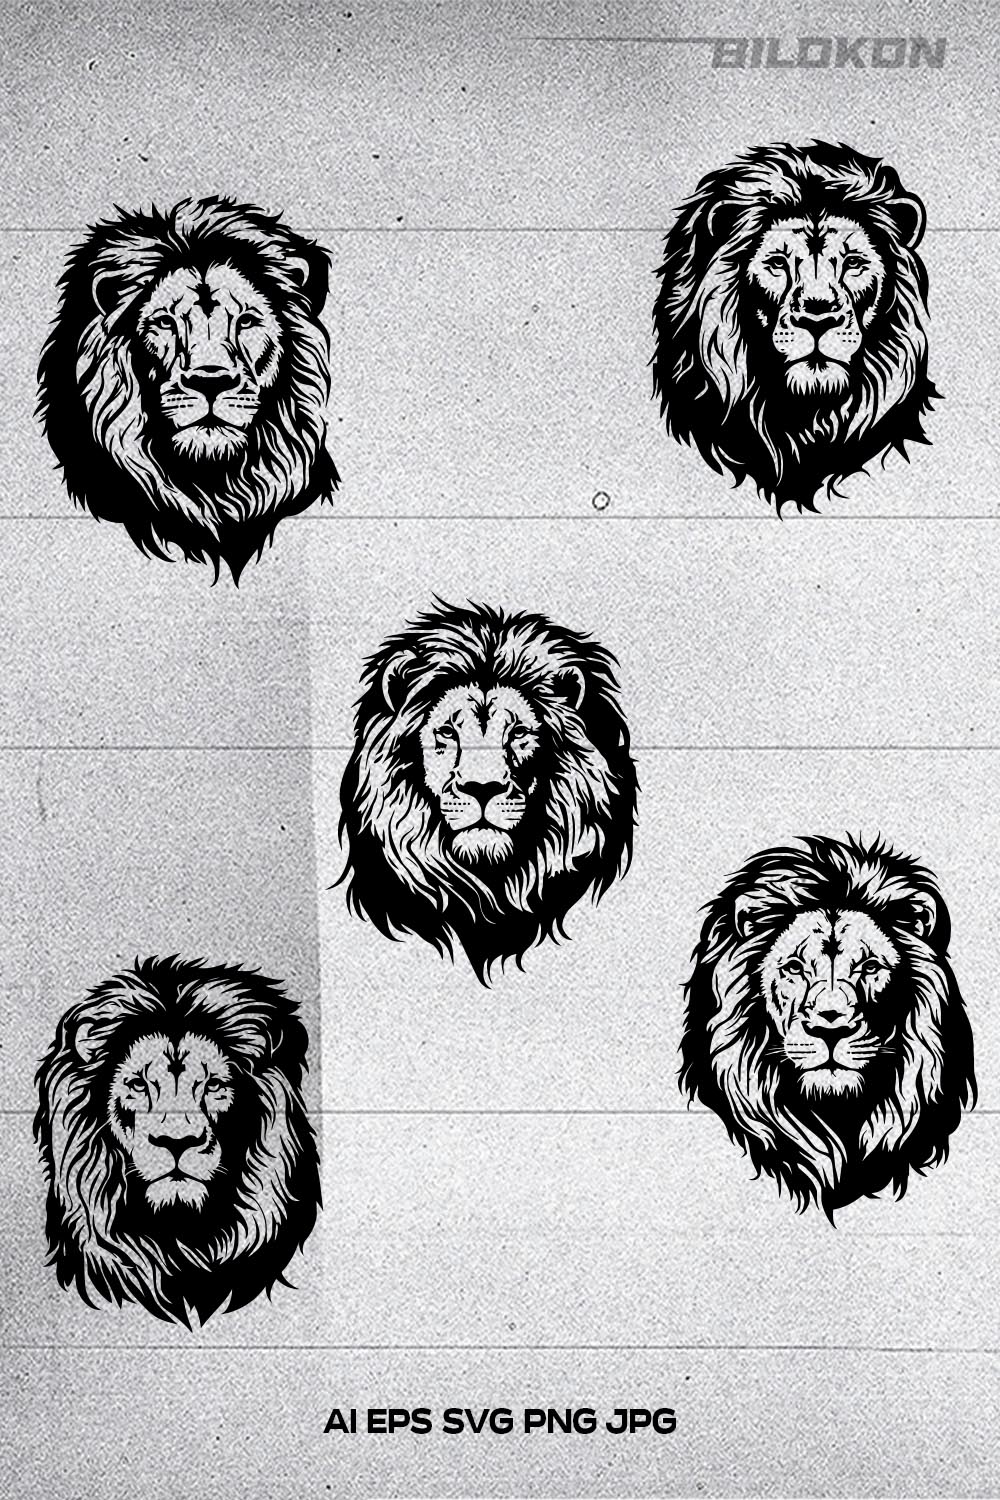 Lion head, lion face vector Illustration, SVG pinterest preview image.